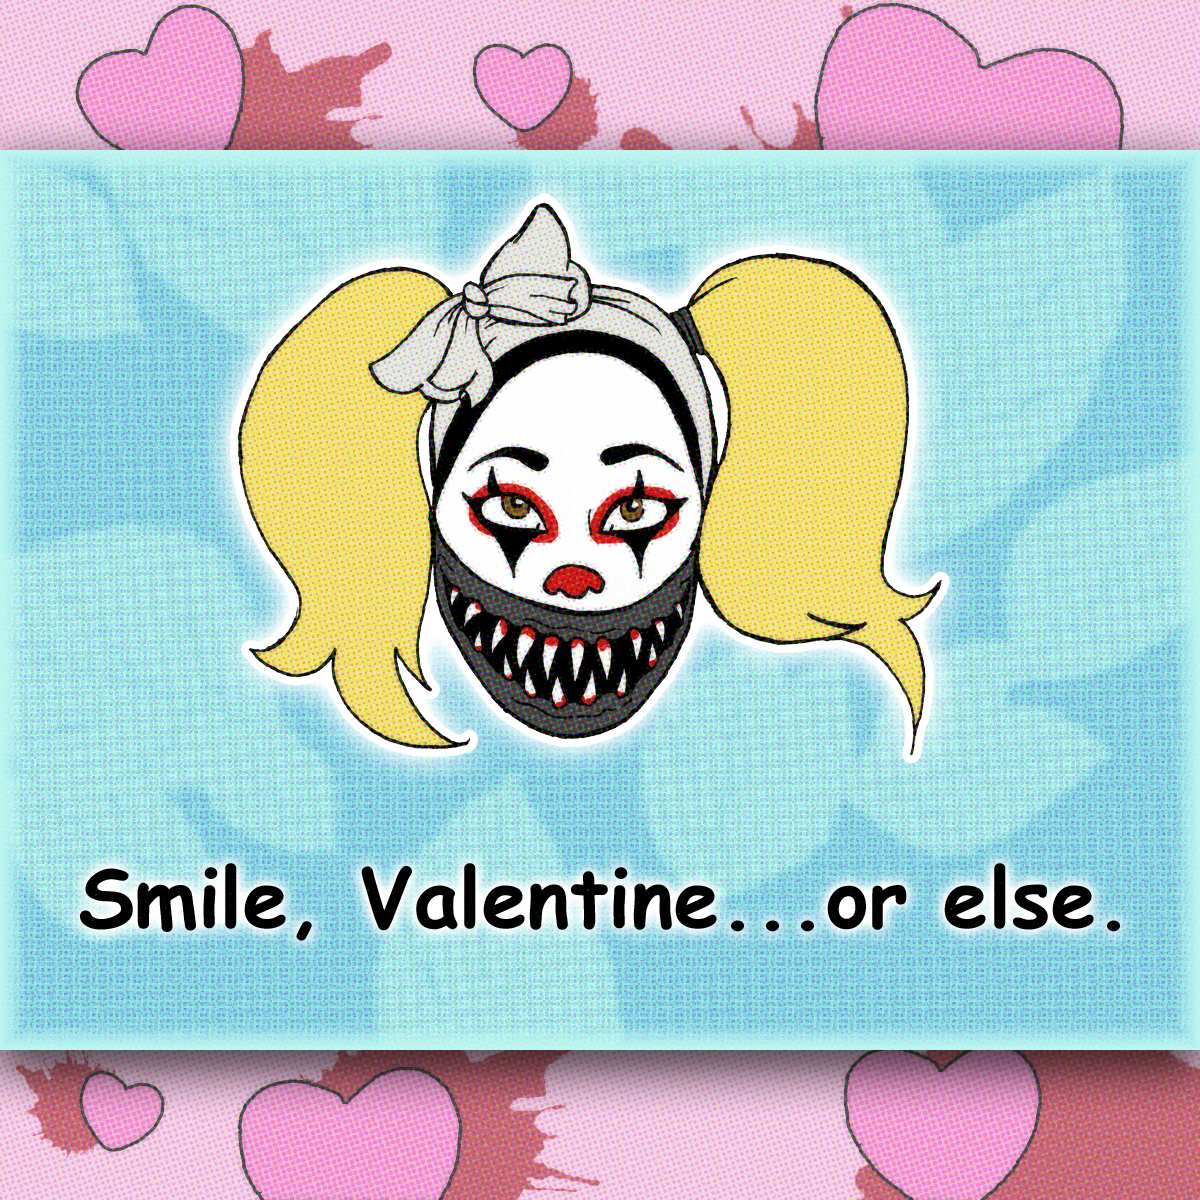 alejo y valentina - Smile, Valentine...or else.